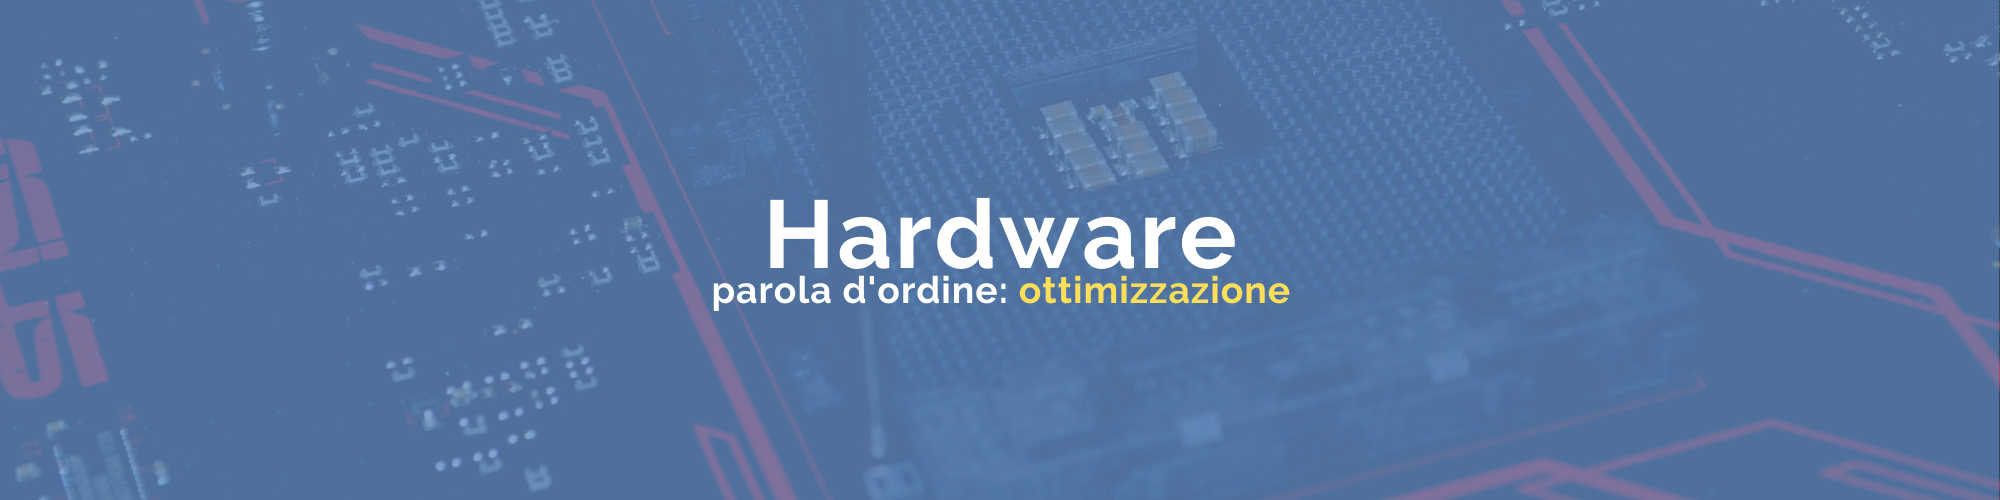 banner servizi hardware